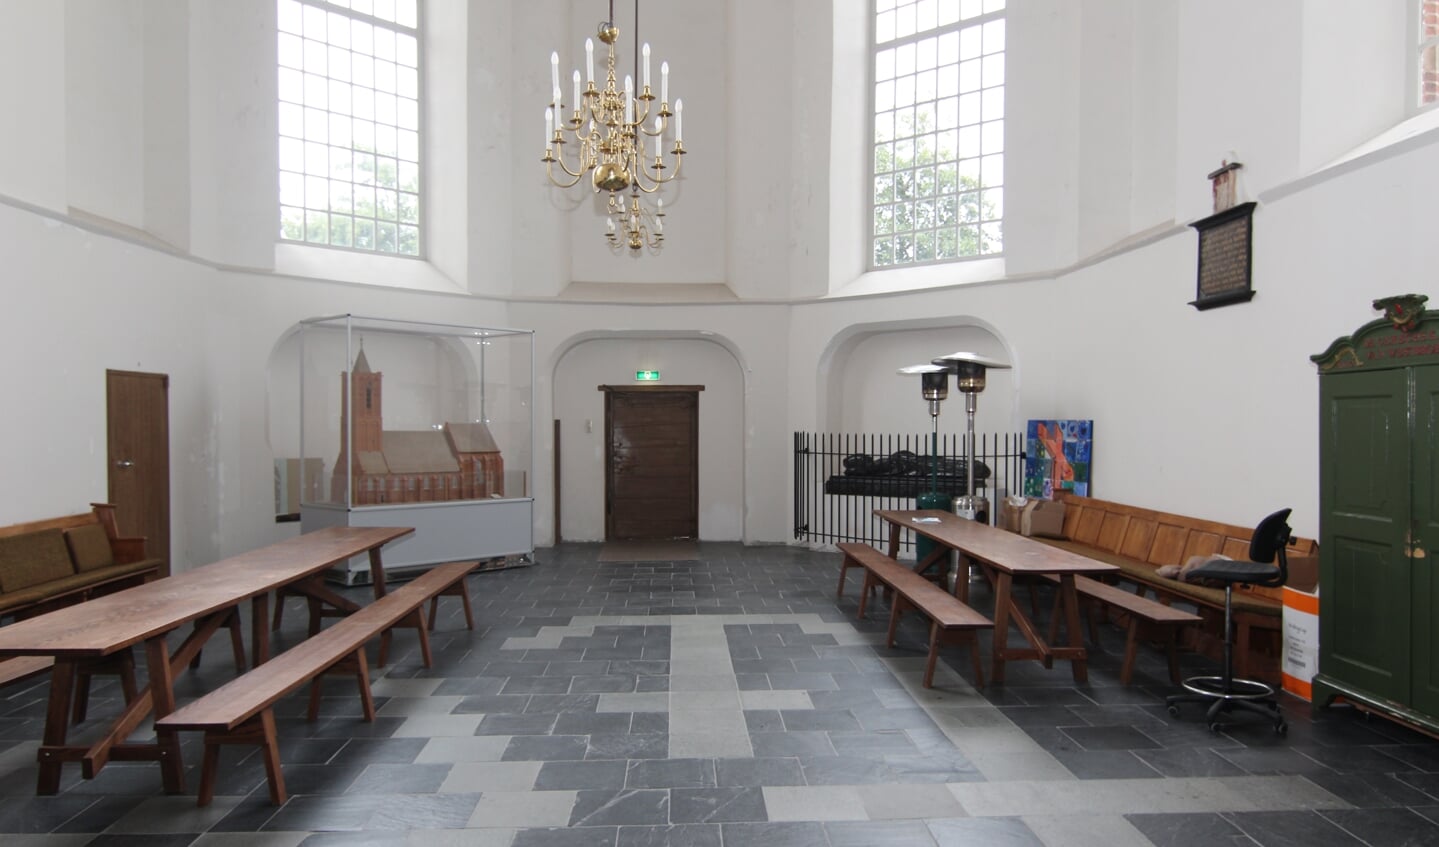 Het ‘koor’ van de kerk van Westbroek is van omstreeks 1500.